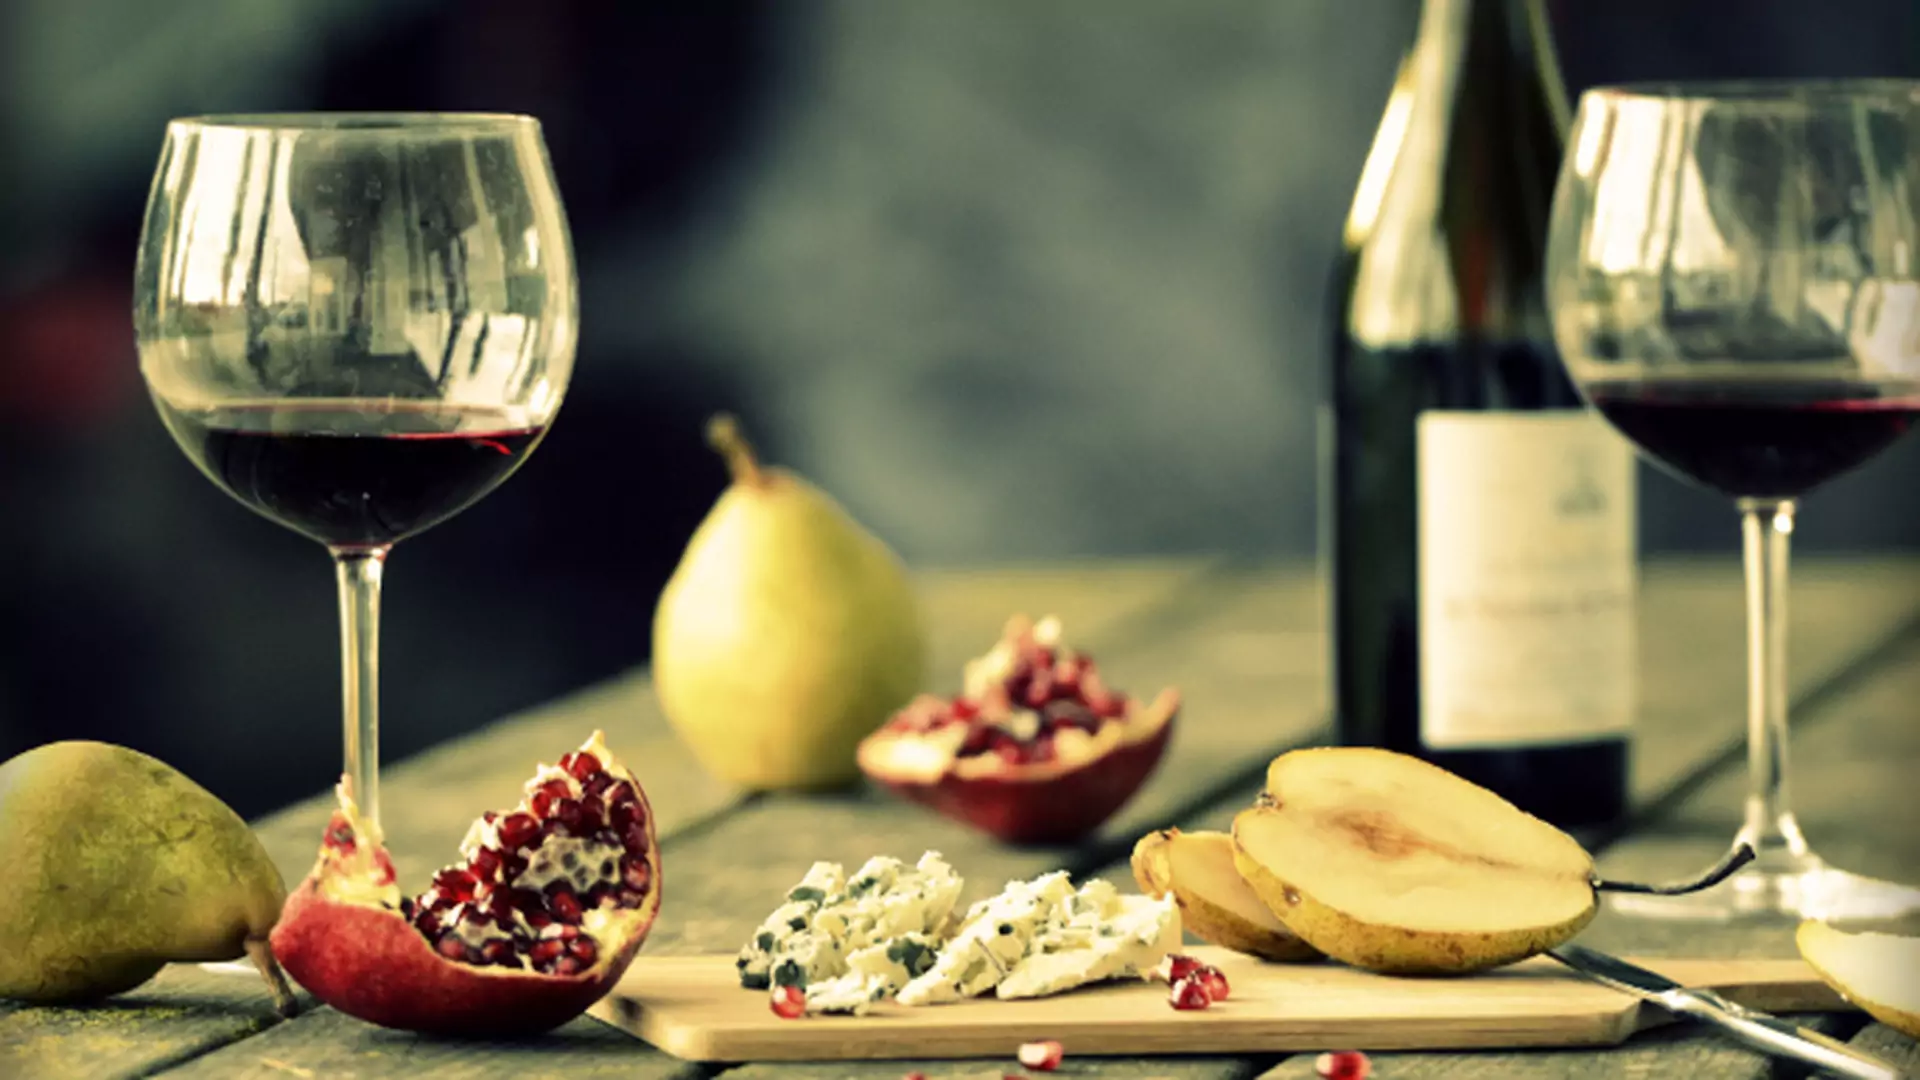 Jakie wino dobrać do potrawy? Podstawowy przewodnik, dzięki któremu zabłyśniesz w towarzystwie (infografika)